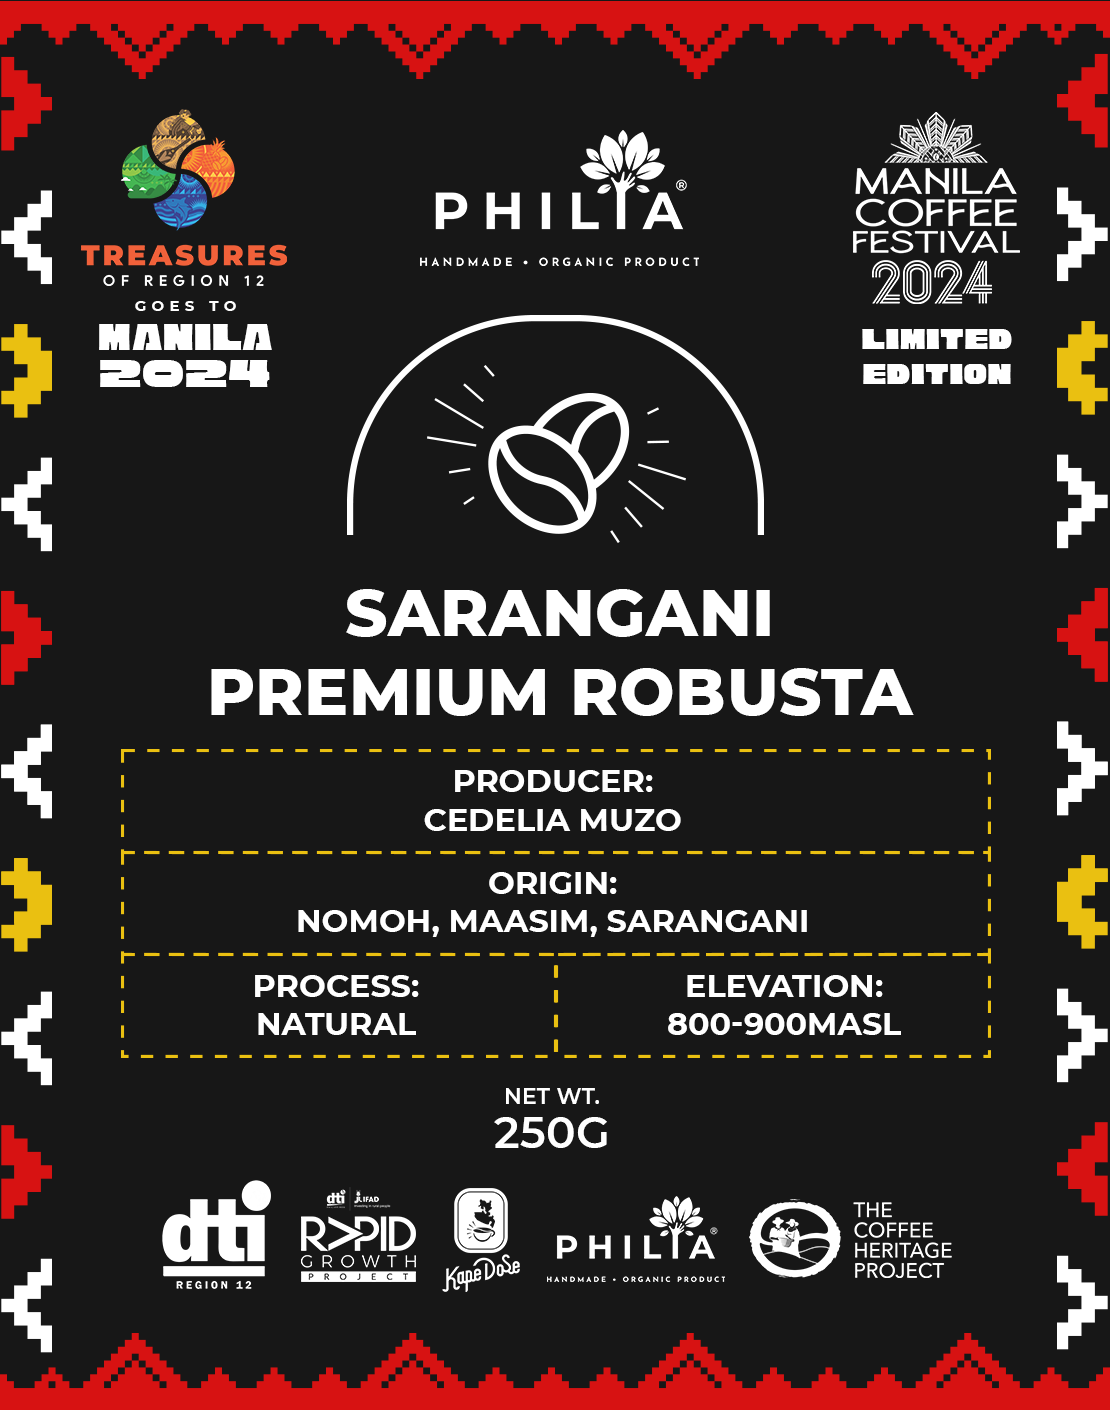 Limited Edition - Manila Coffee Festival 2024 - Coffees of Region 12